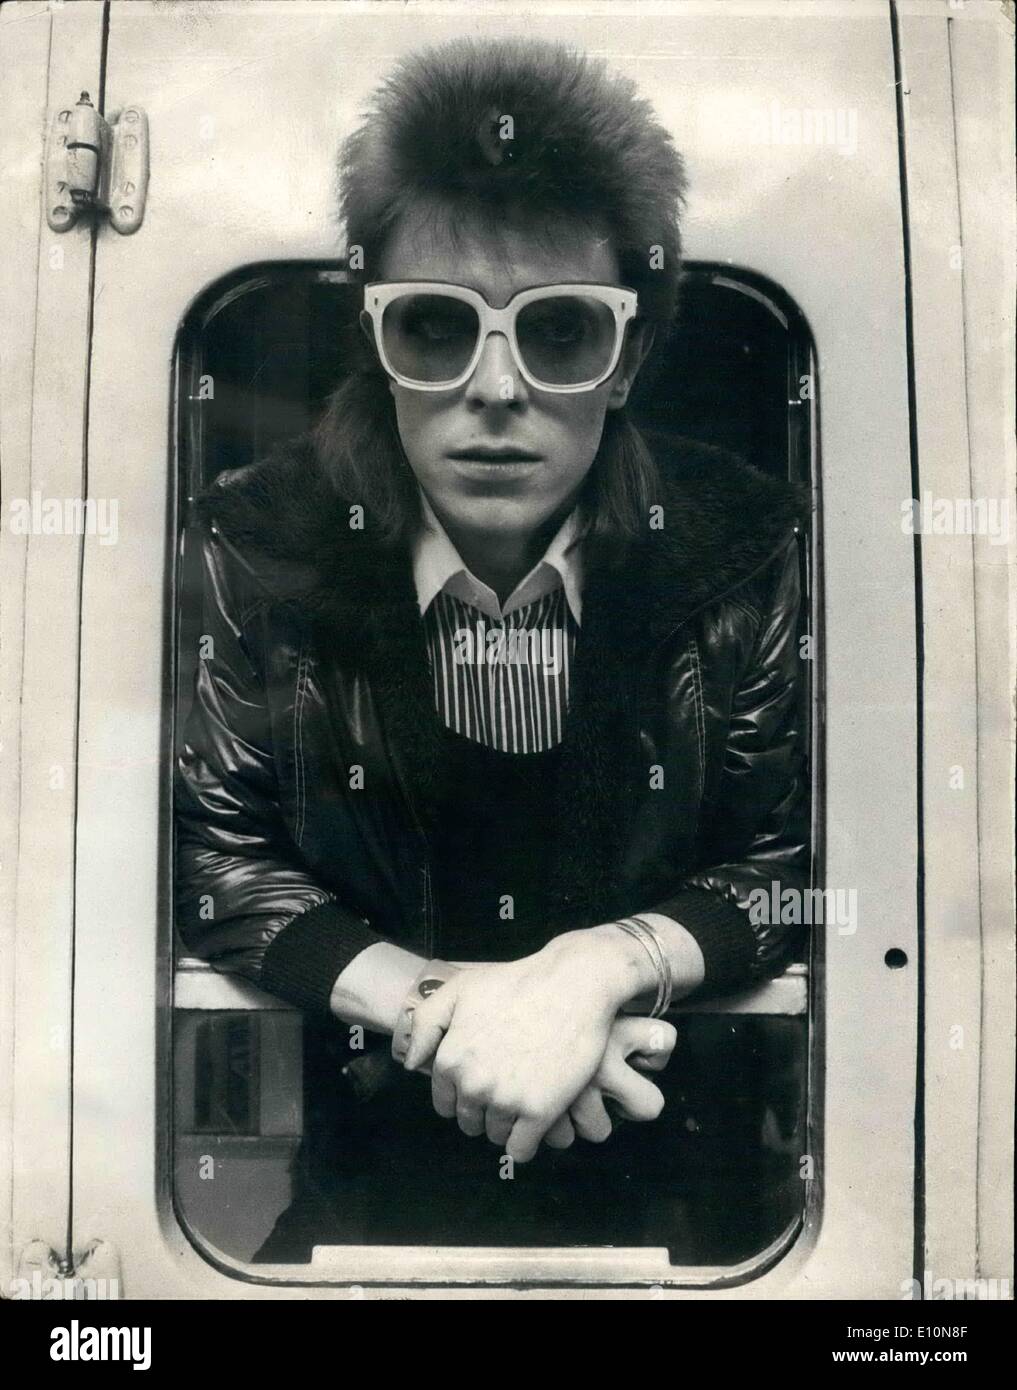 Lug. 07, 1973 - David Bowie off a Parigi.: David Bowie, il pop star che la scorsa settimana a uscire con concerti presso il picco della sua popolarità ha certamente non ha smesso di funzionare. Oggi, solo cinque giorni dopo il suo ultimo concerto che è arrivato al termine di una settimana di sette tour britannico, a sinistra per Parigi per iniziare la registrazione del suo ultimo LP. Egli trascorrere tre settimane la registrazione presso il castello studios appena fuori Parigi e poi si sposterà a Roma per completare la LP A RSA studios ci. Mostra fotografica di David Bowie a Victoria Station e oggi. Foto Stock